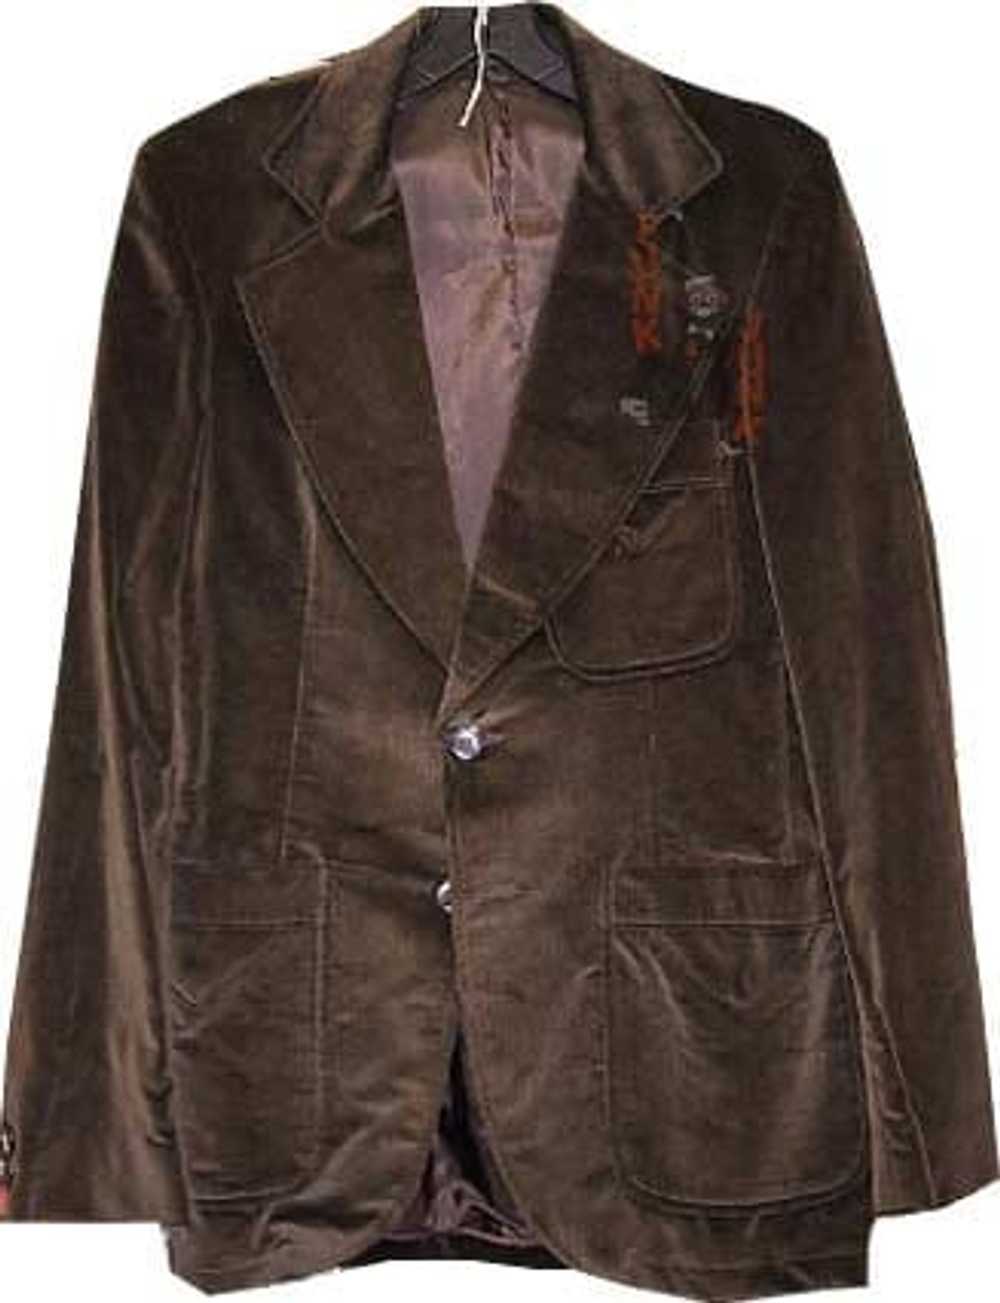 Brown Velveteen Double Collar Man’s Jacket - image 1